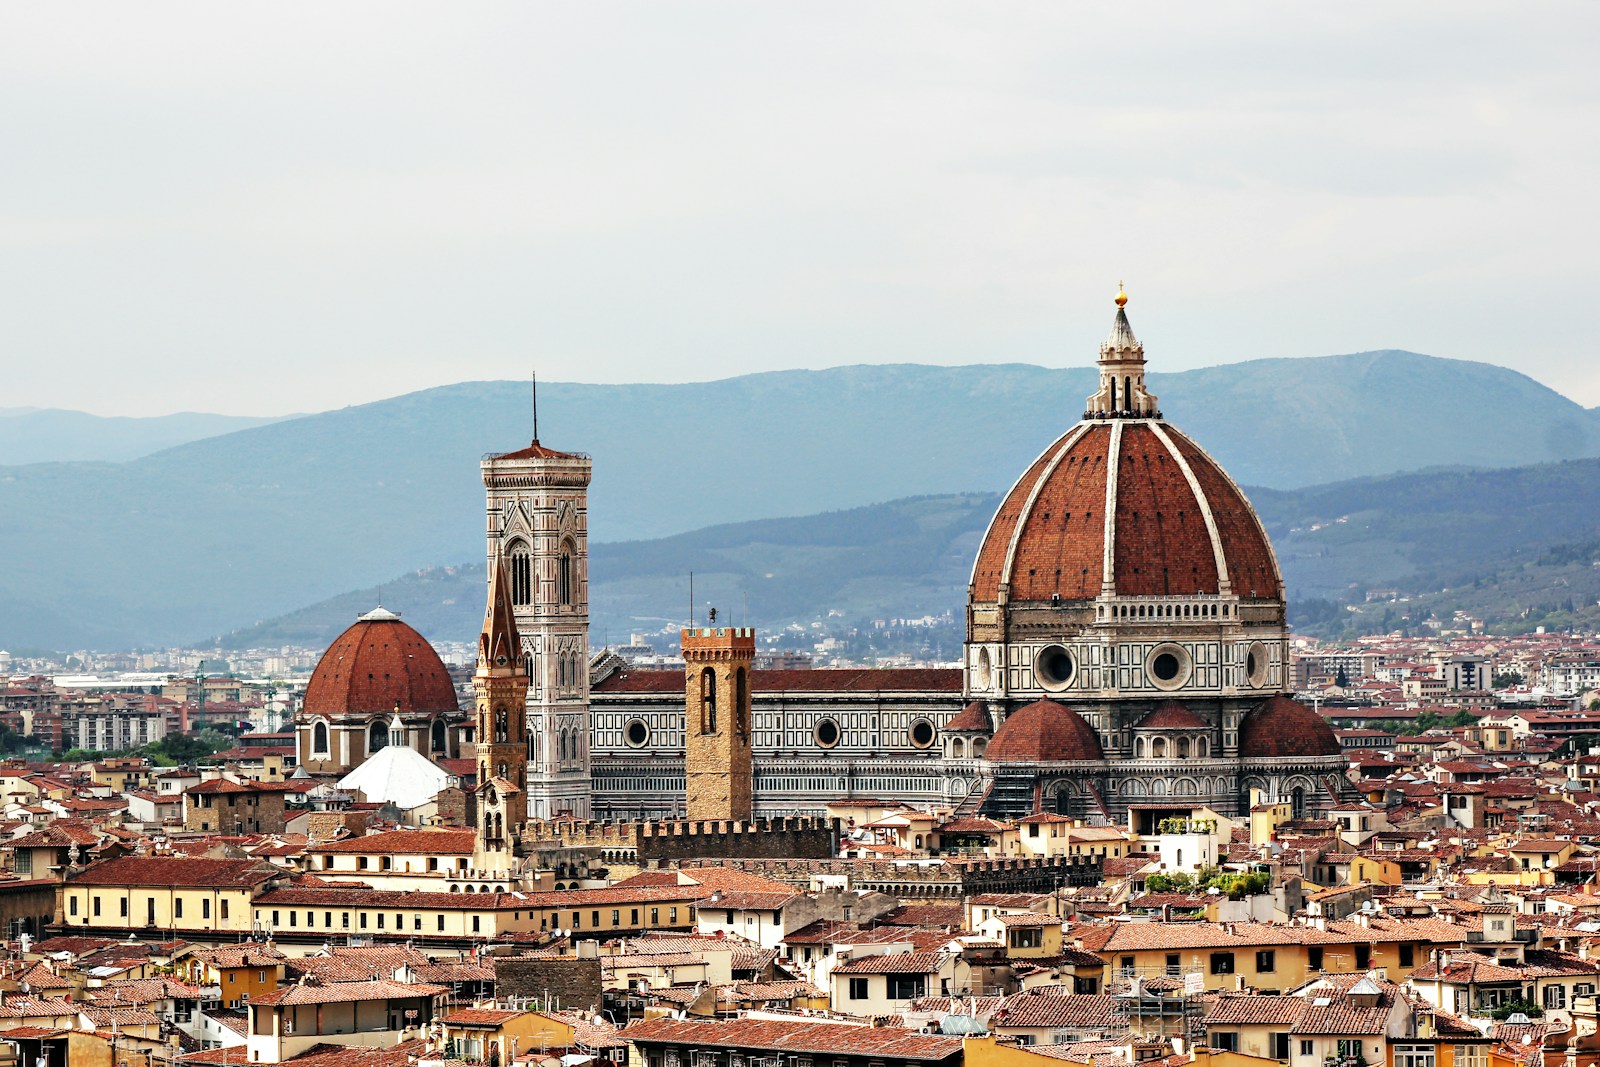 Firenzei zsidó vezető: Ez egy civilizációs háború